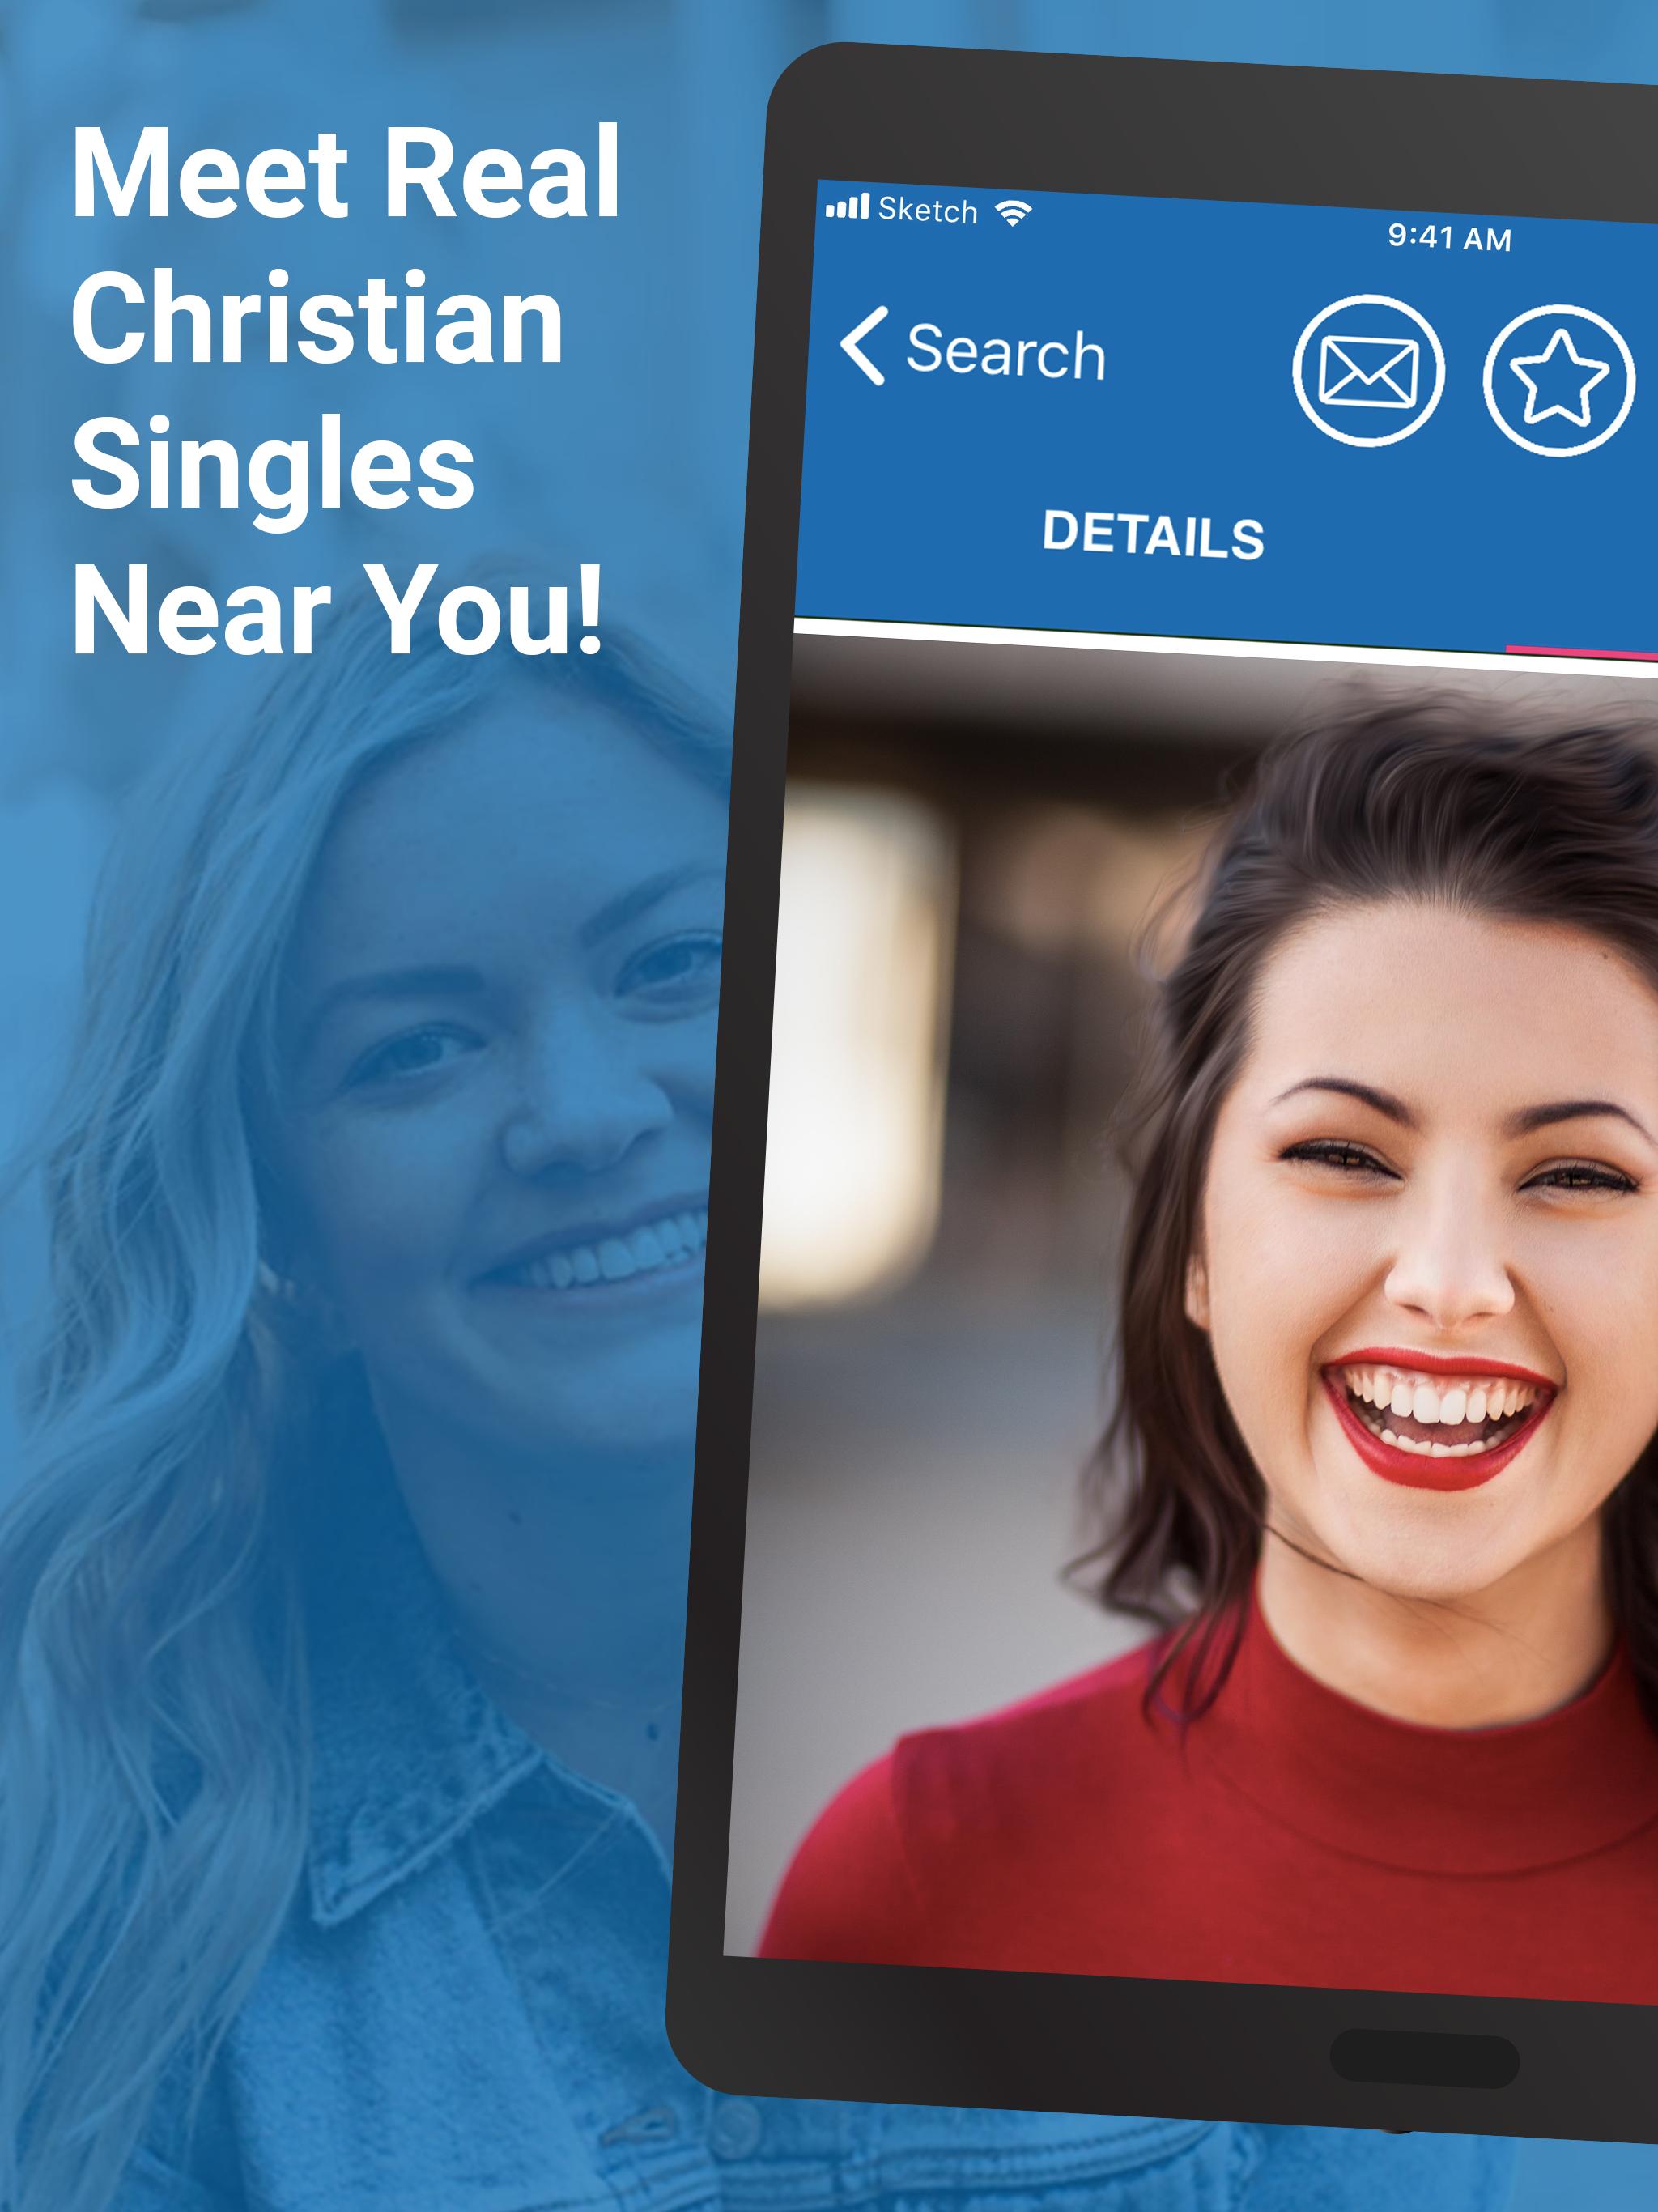 Beste christian dating apps